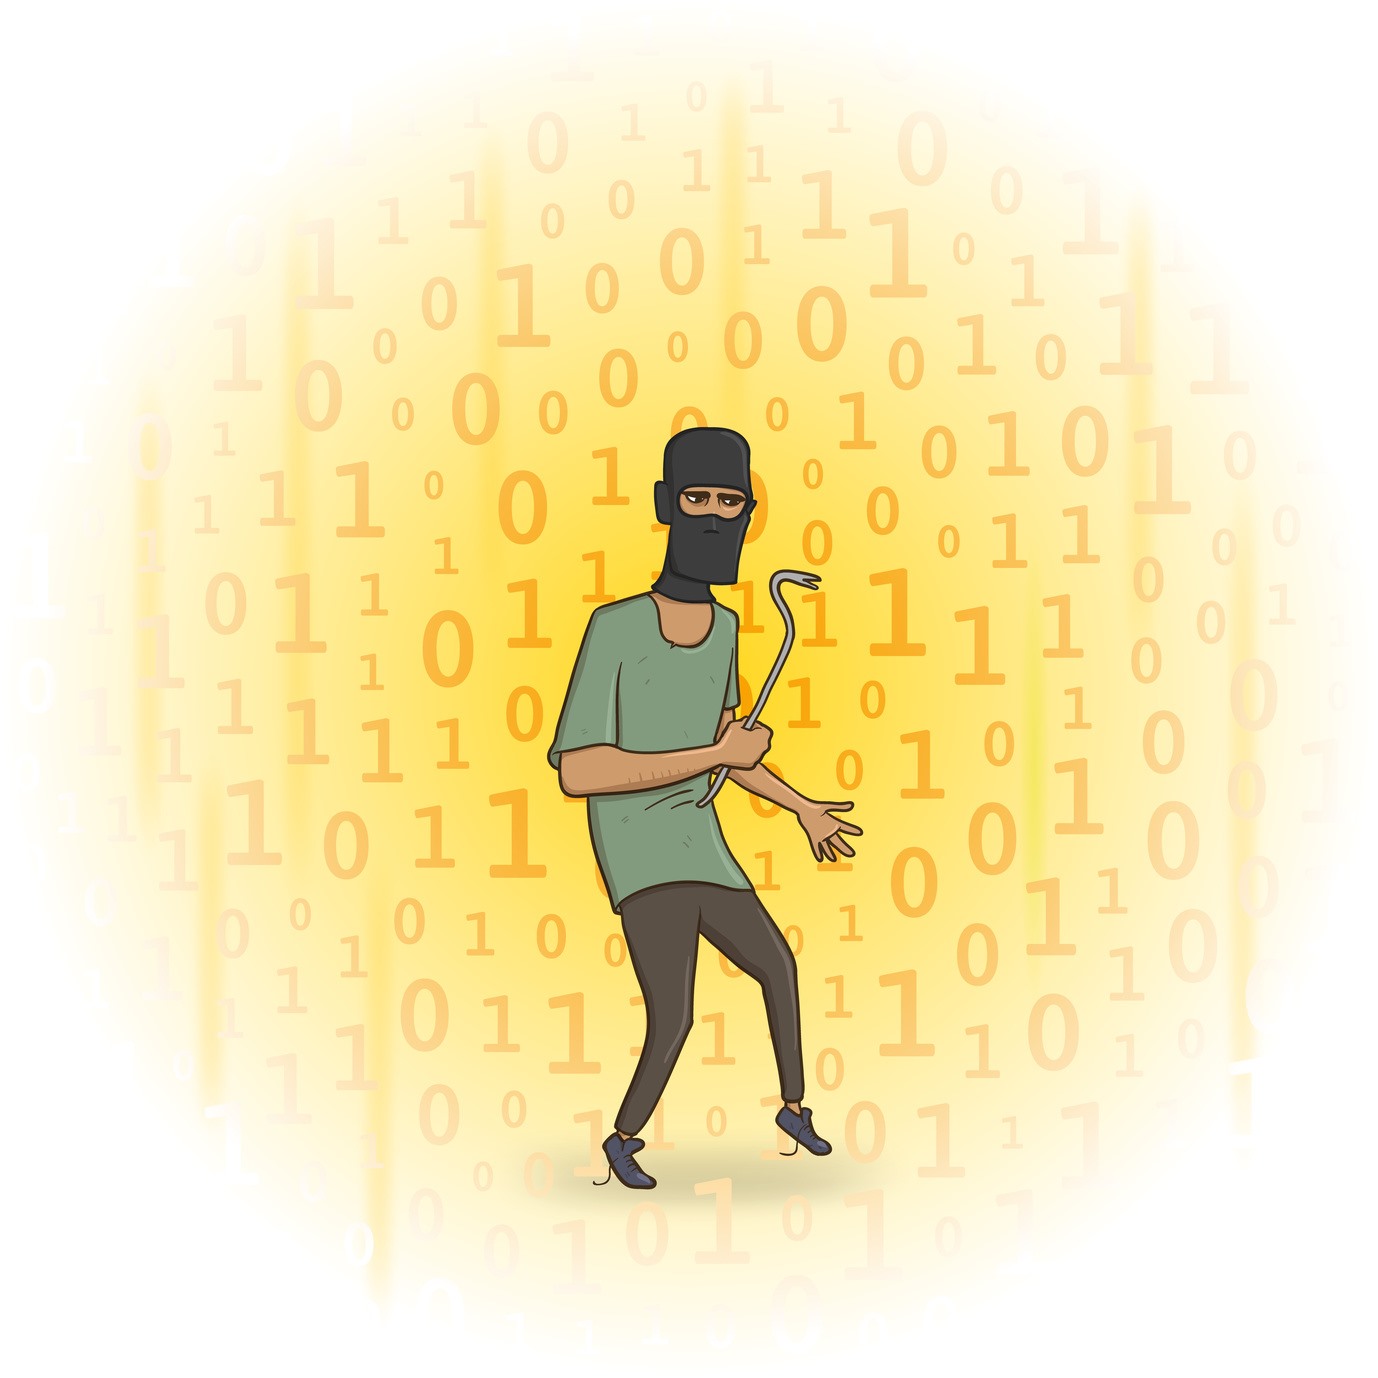 Hacktivismo - Conceito e o que é